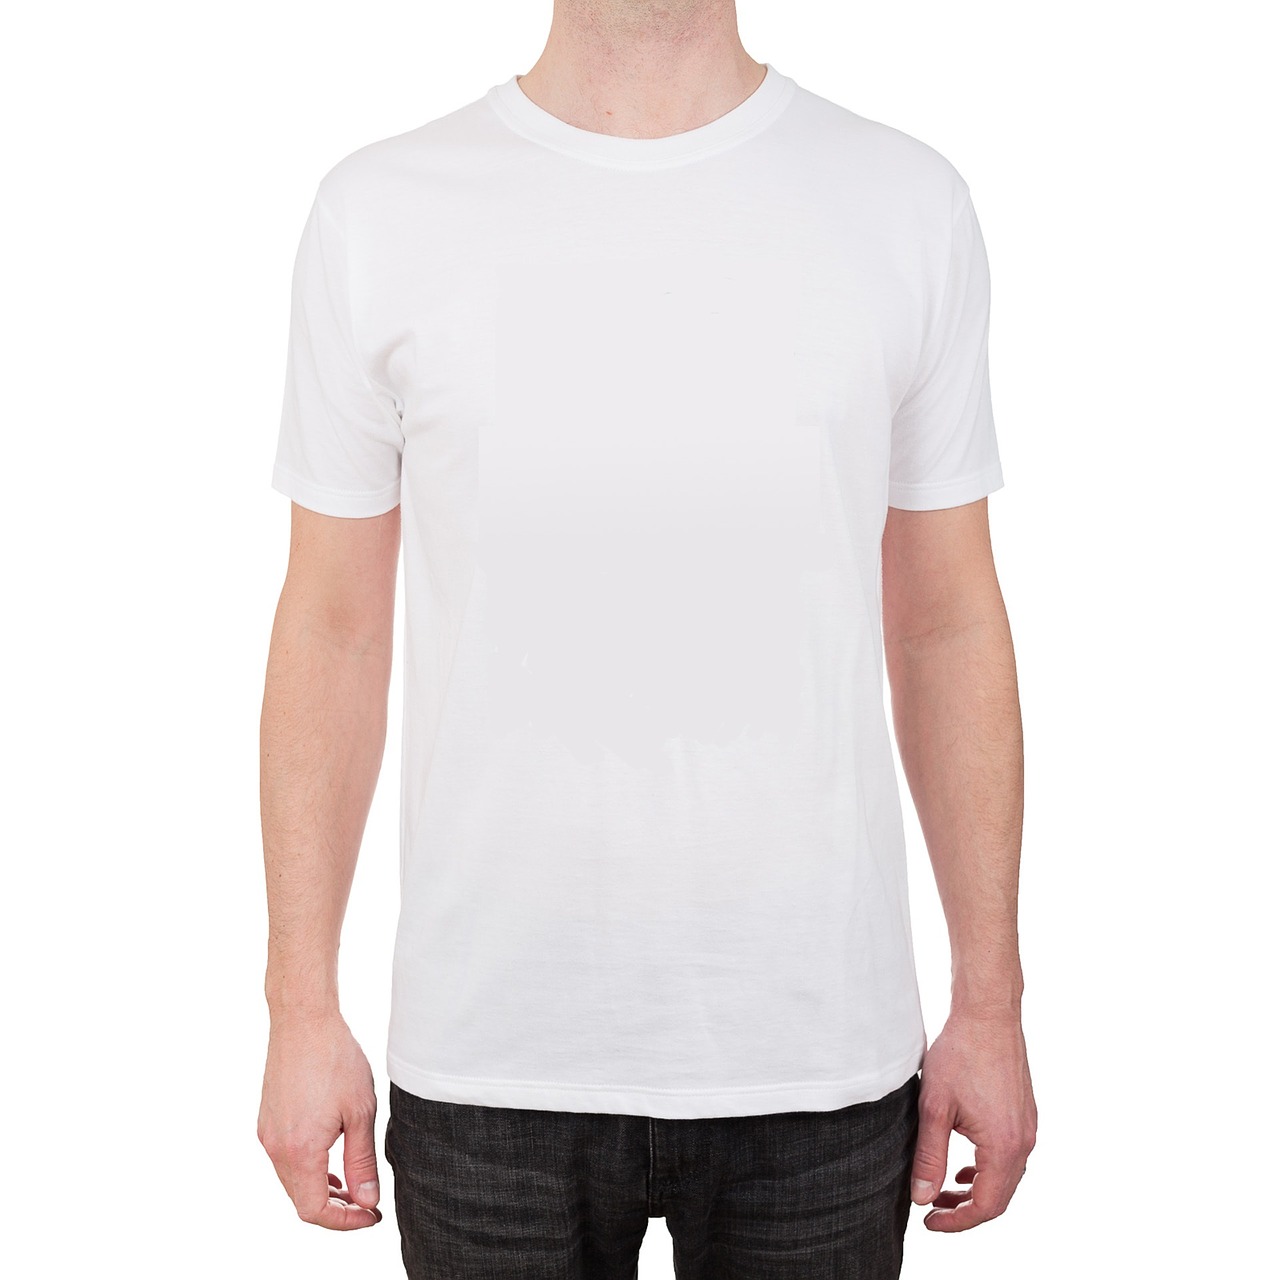 t-shirt white garment free photo